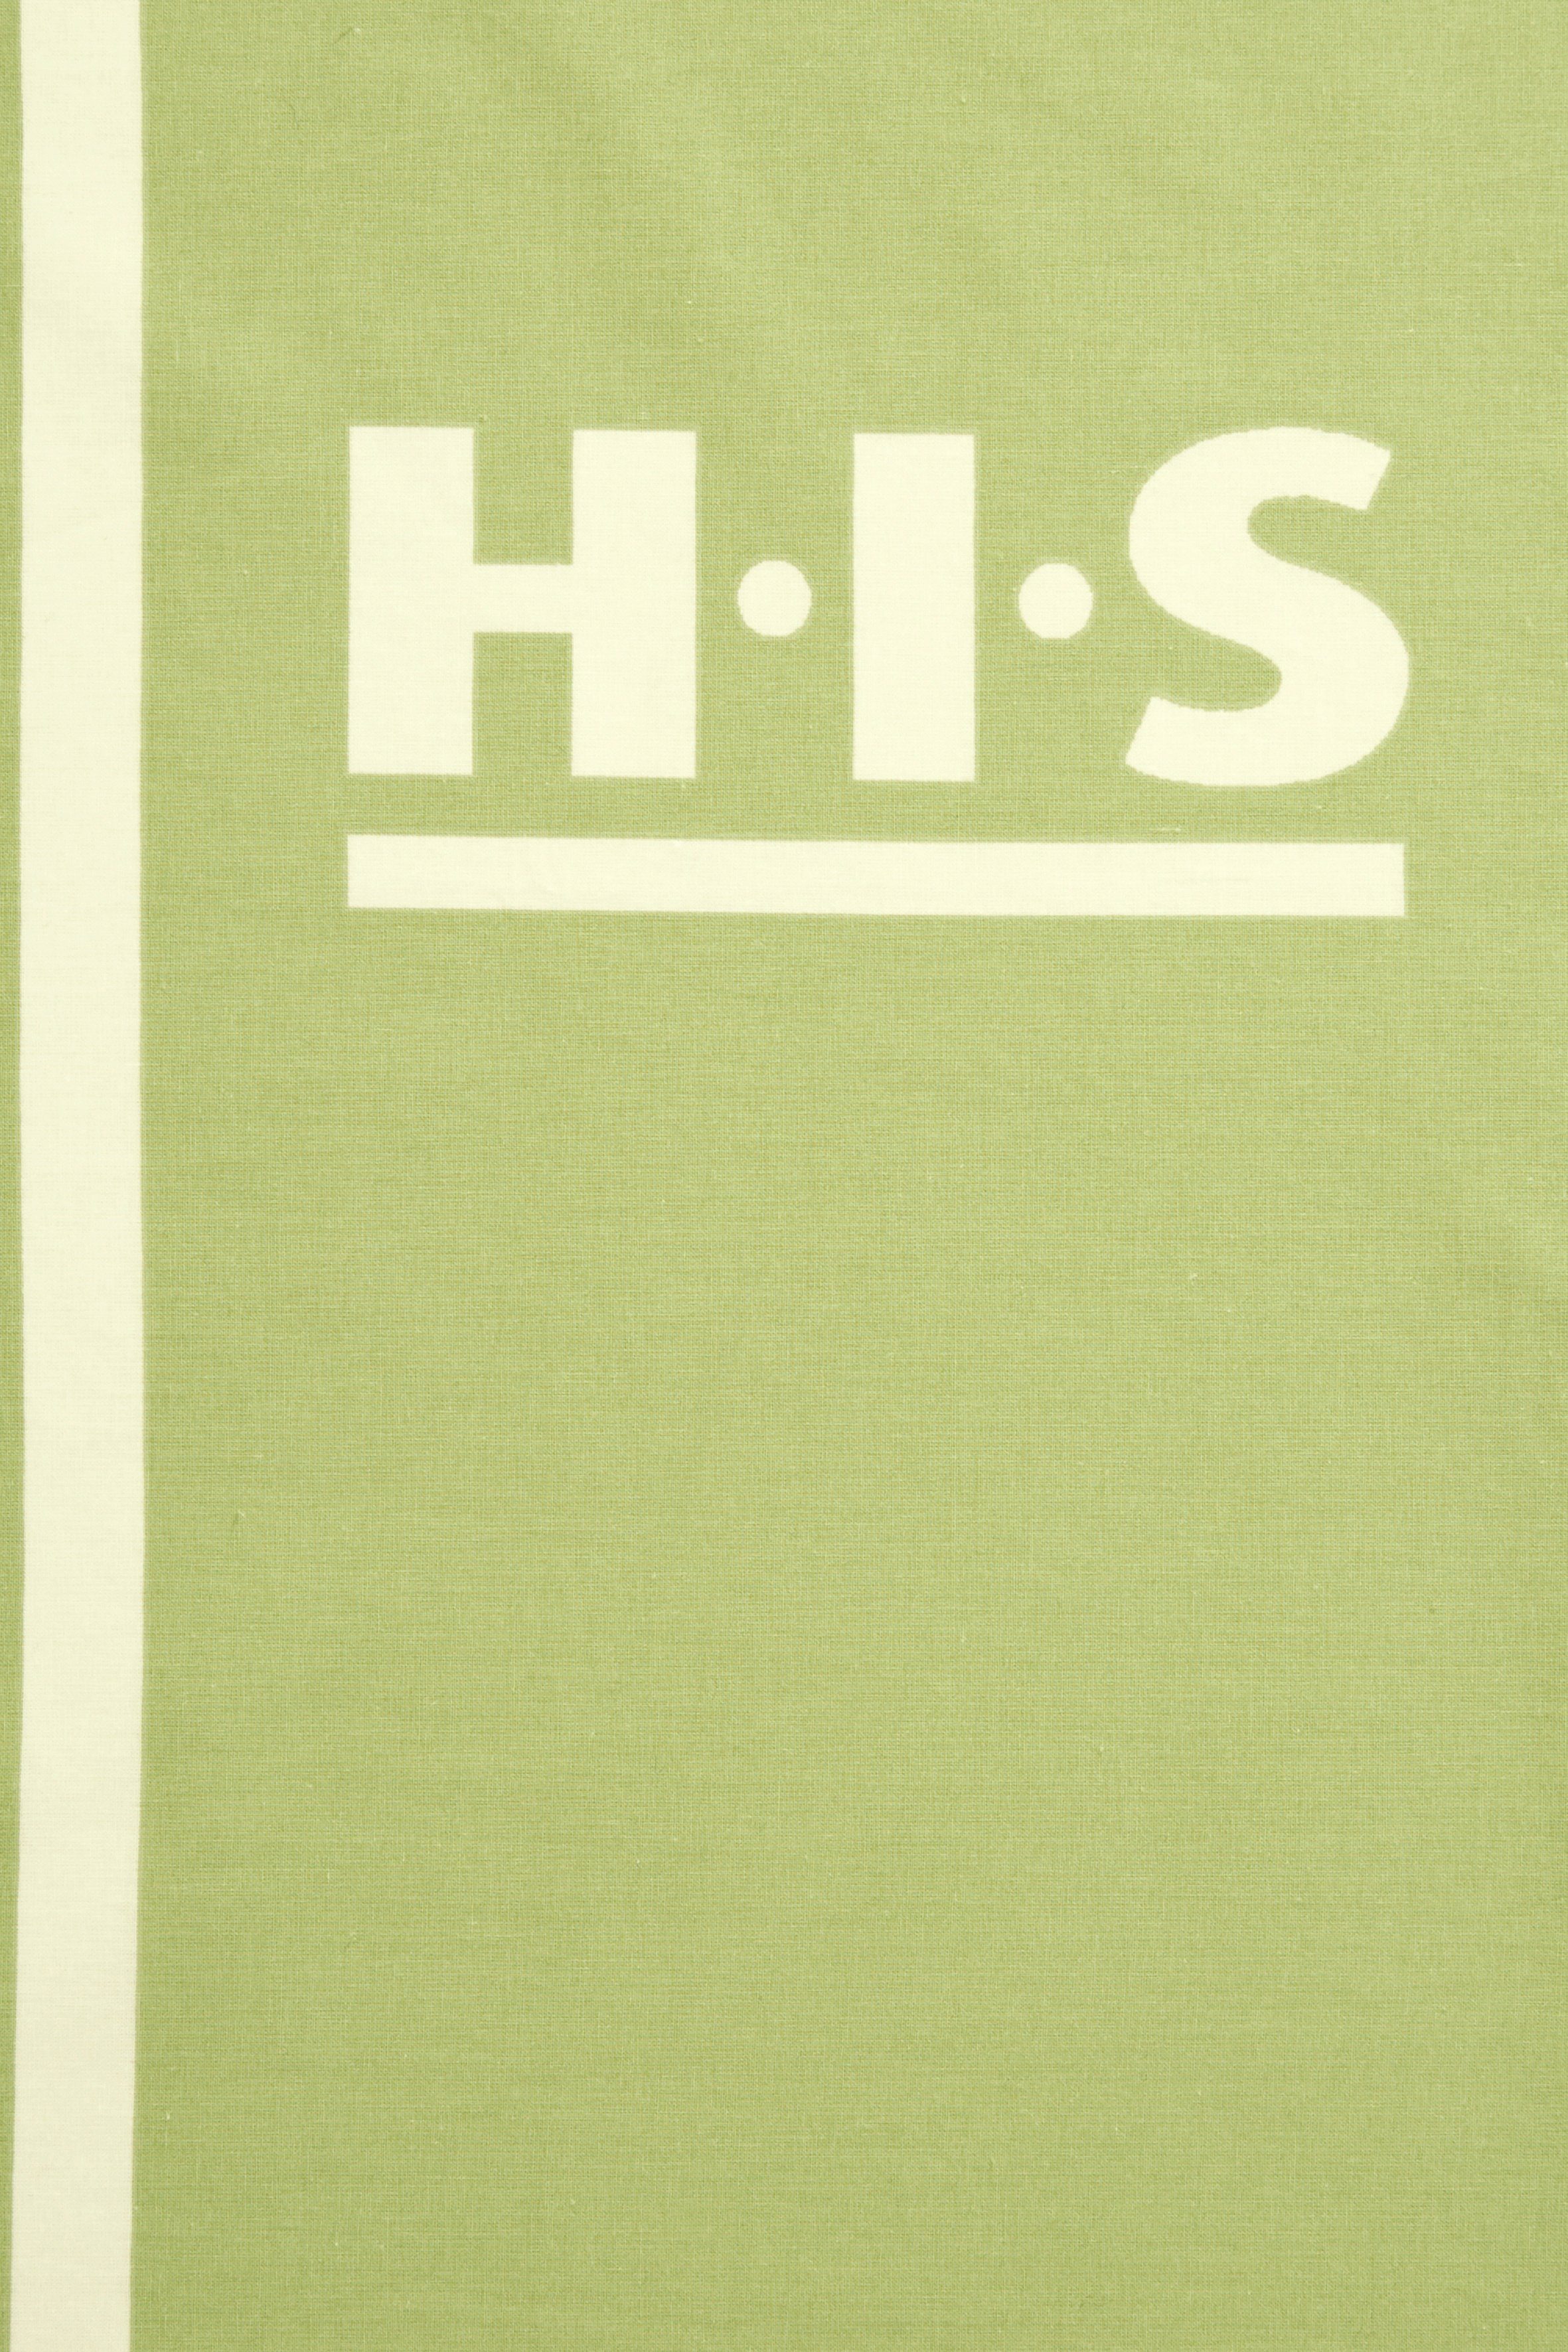 grün Bettwäsche 155x220 cm, Philip aus H.I.S, sportliche Gr. Bettwäsche Baumwolle, teilig, 2 oder 135x200 in Renforcé, kariert